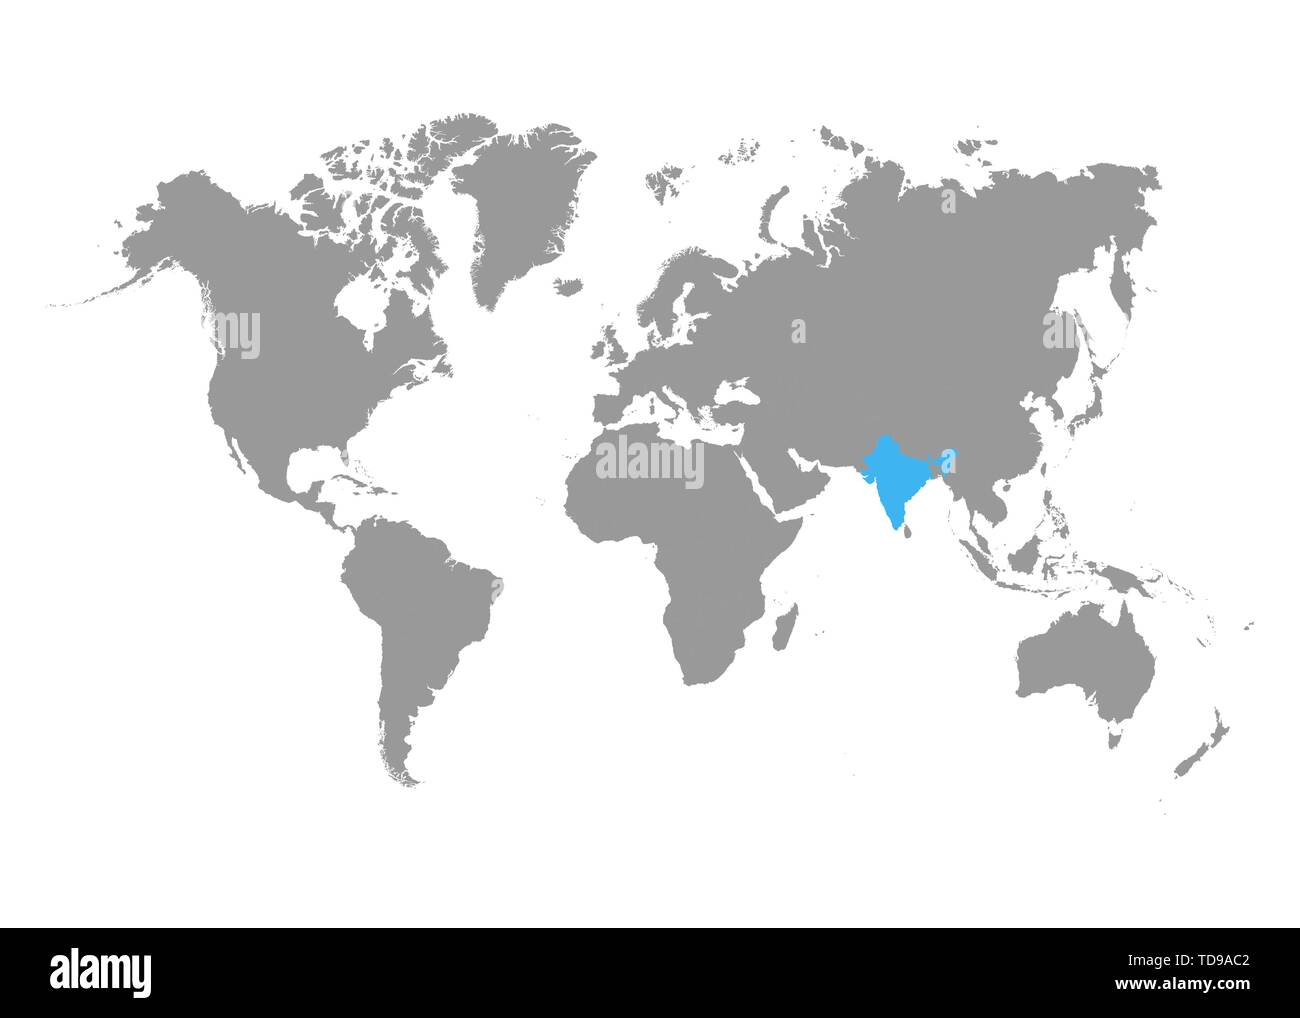 Mappa di India è evidenziata in blu sulla mappa del mondo. Vettore Illustrazione Vettoriale